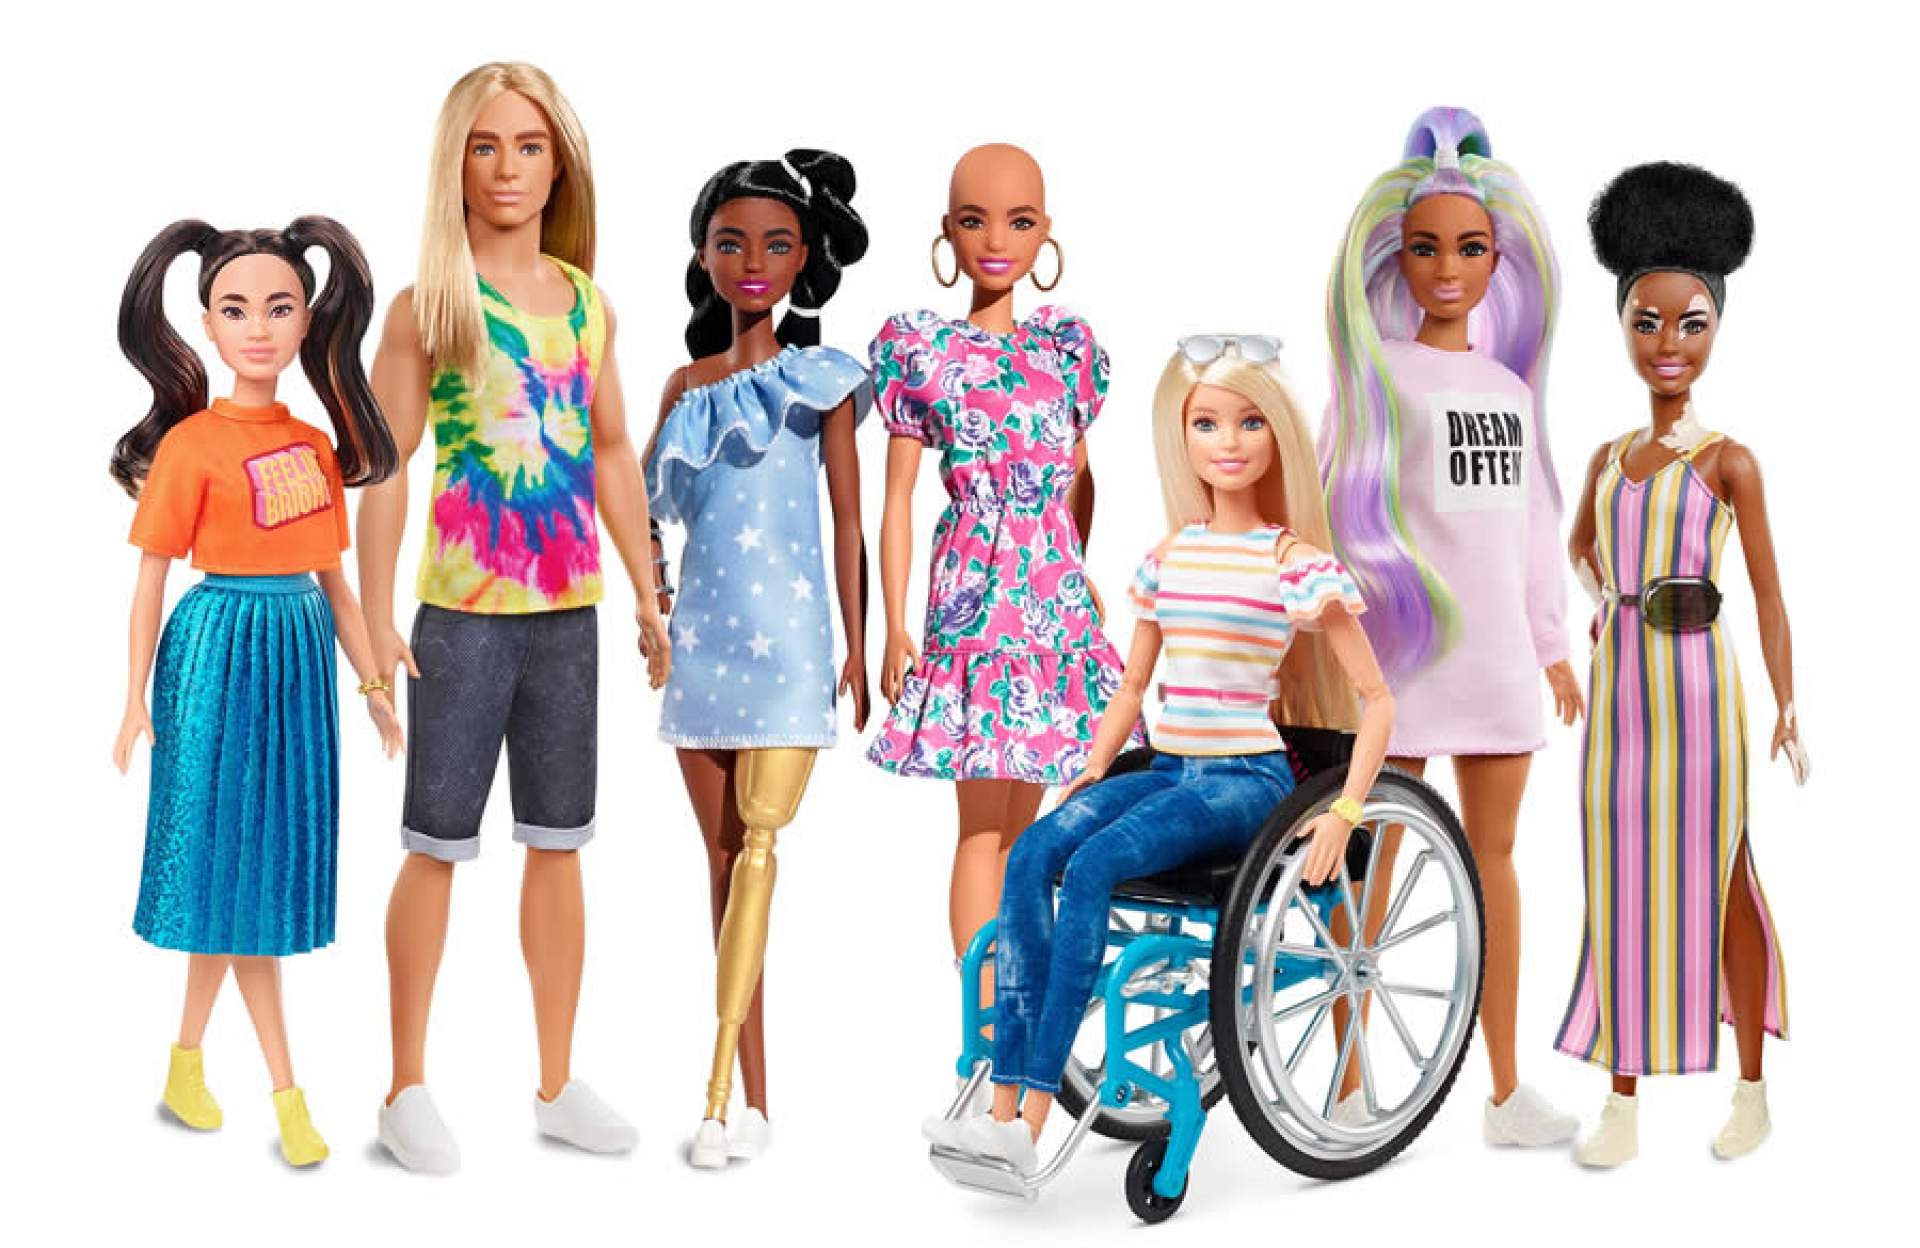 Bonecas de Papel - Barbie com roupas para imprimir - Brinquedos de